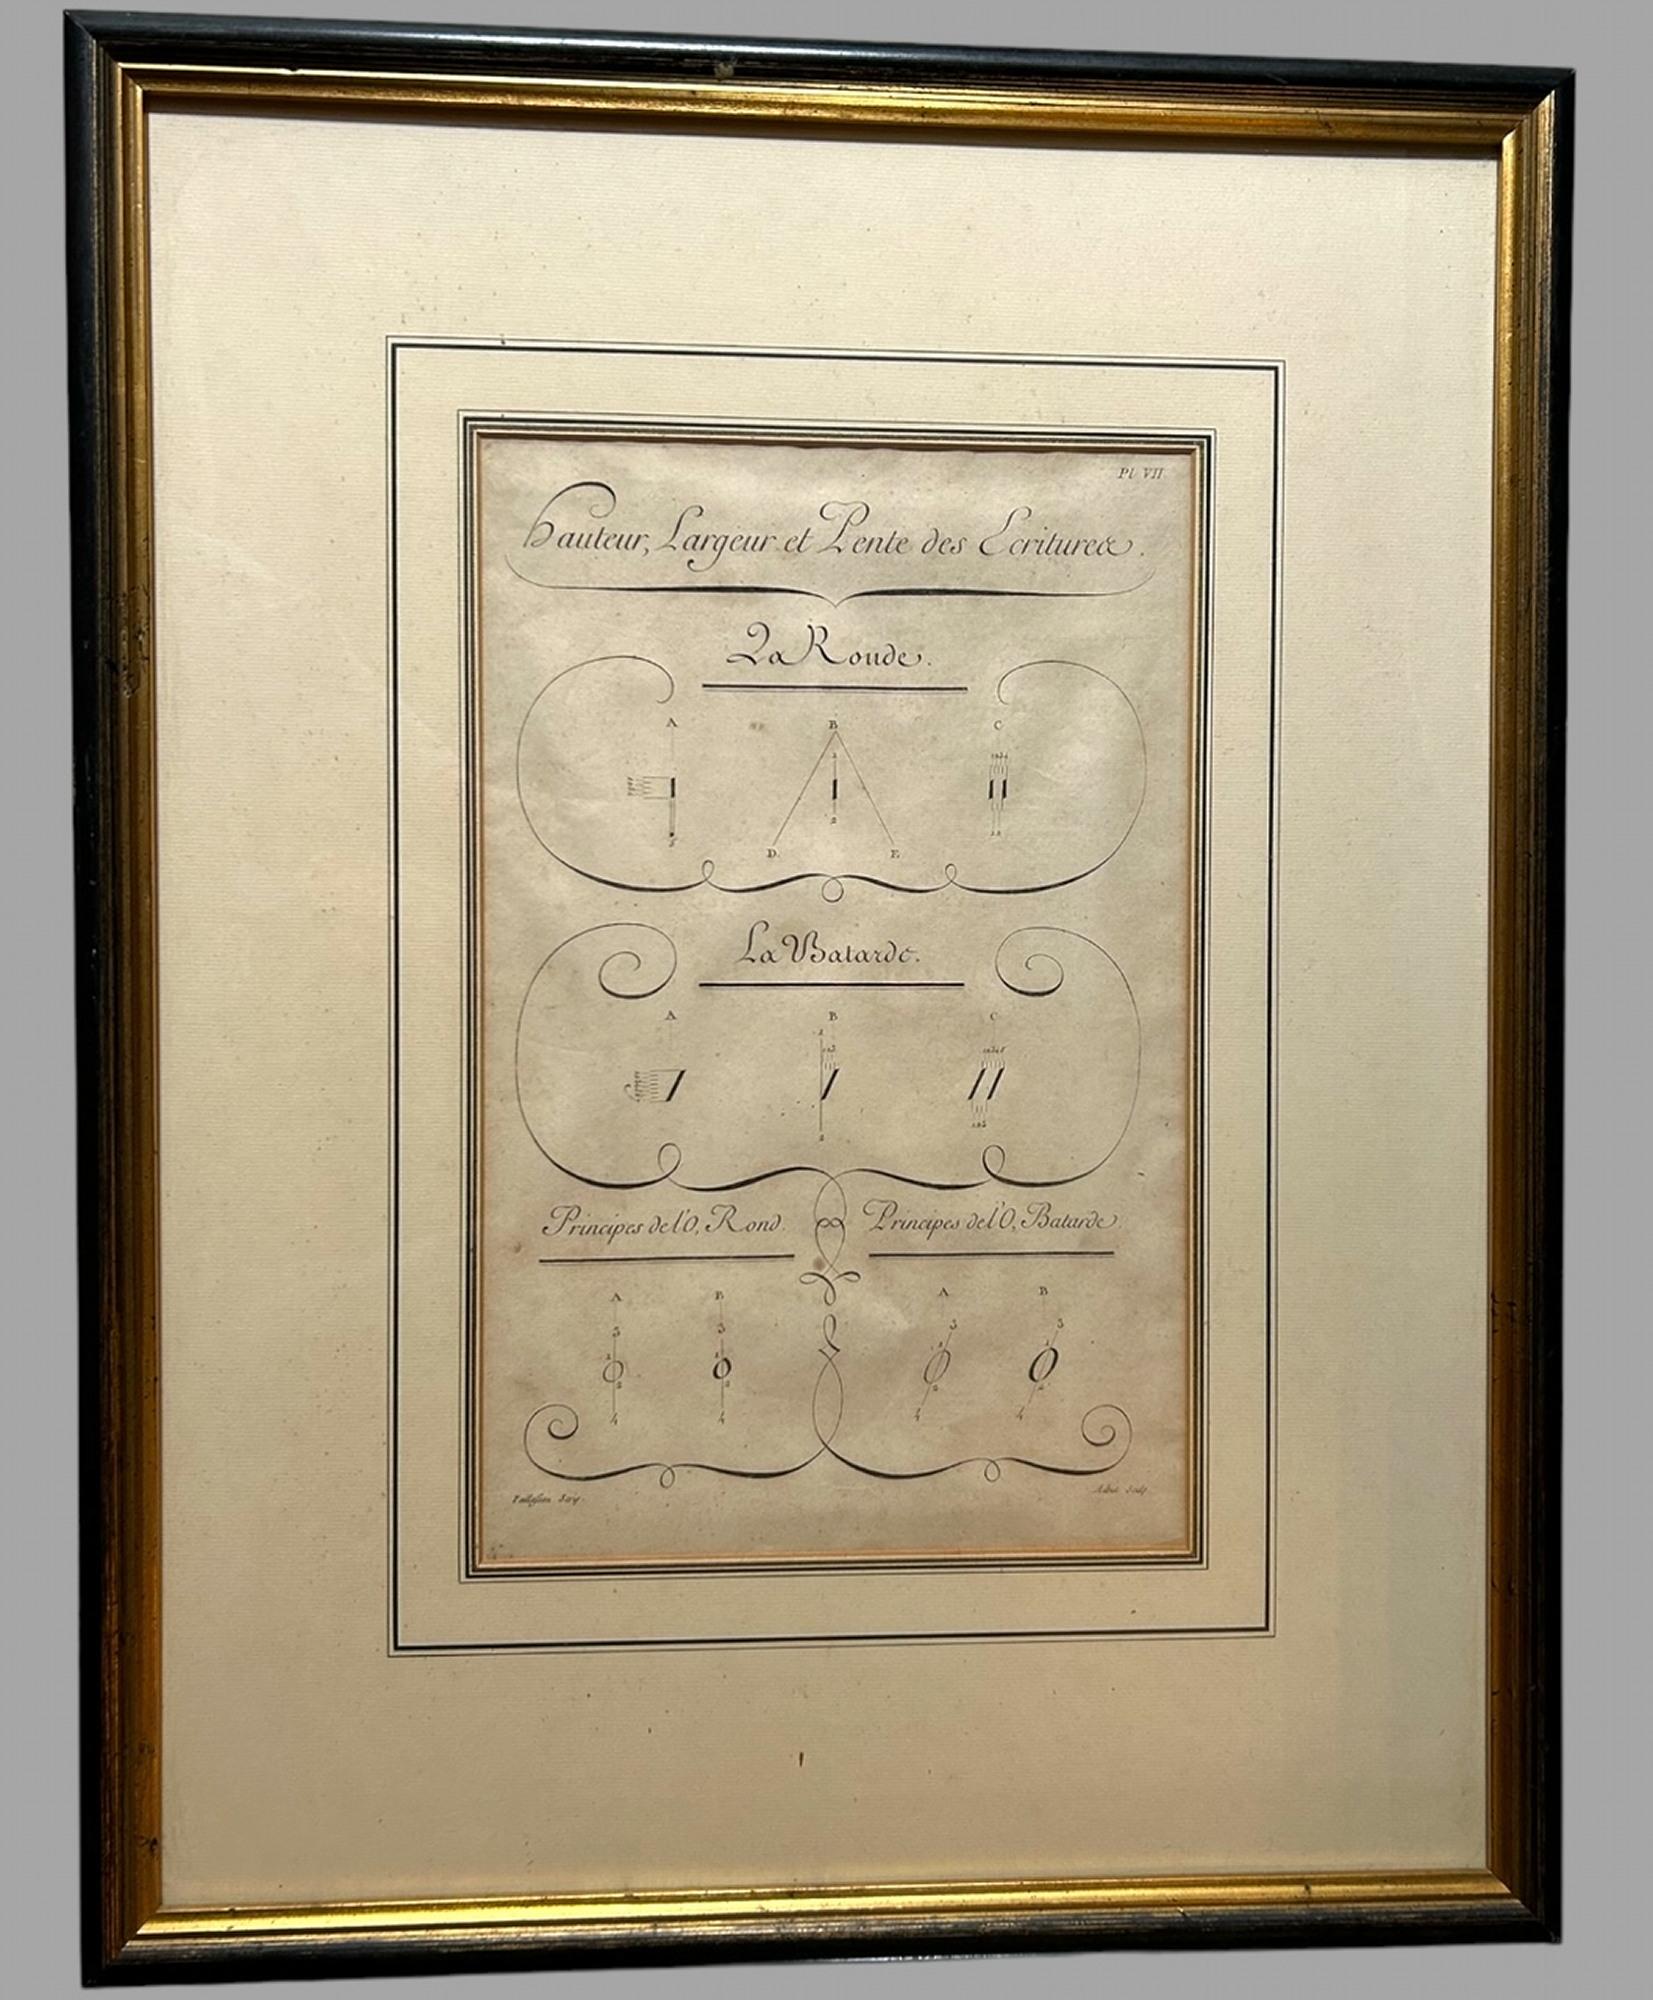 Eine wunderbare Reihe von acht Platten aus Charles Paillasson's L'Art d'Ecrire alle einzeln gerahmt c1763 mit Franzosen Aubin Graveur.

Charles Paillassons berühmtes Handbuch der Handschrift *L'Art d'Ecrire* wurde ursprünglich 1763 als Teil der